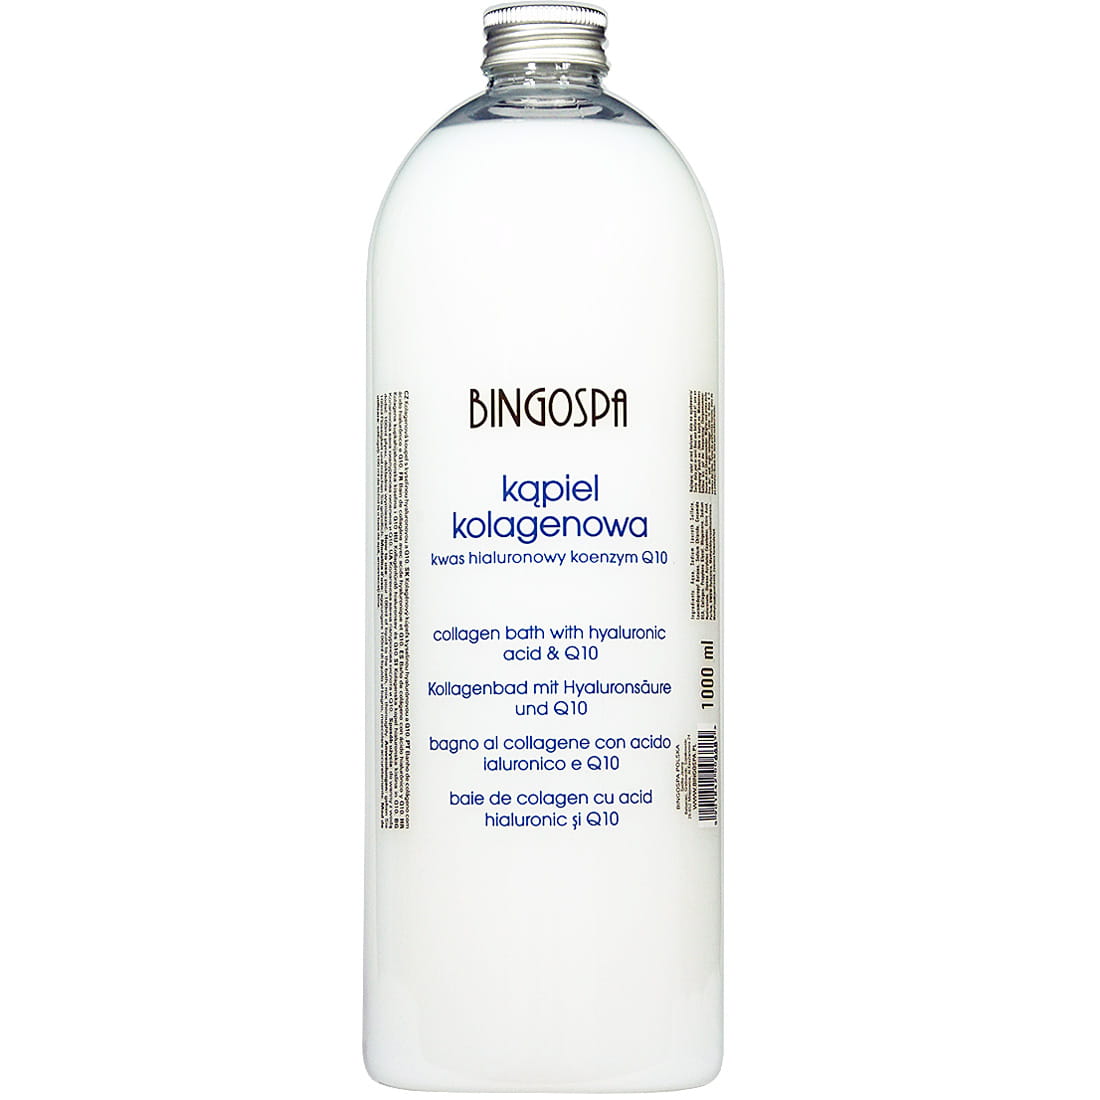 bingospa szampon kolagenowy